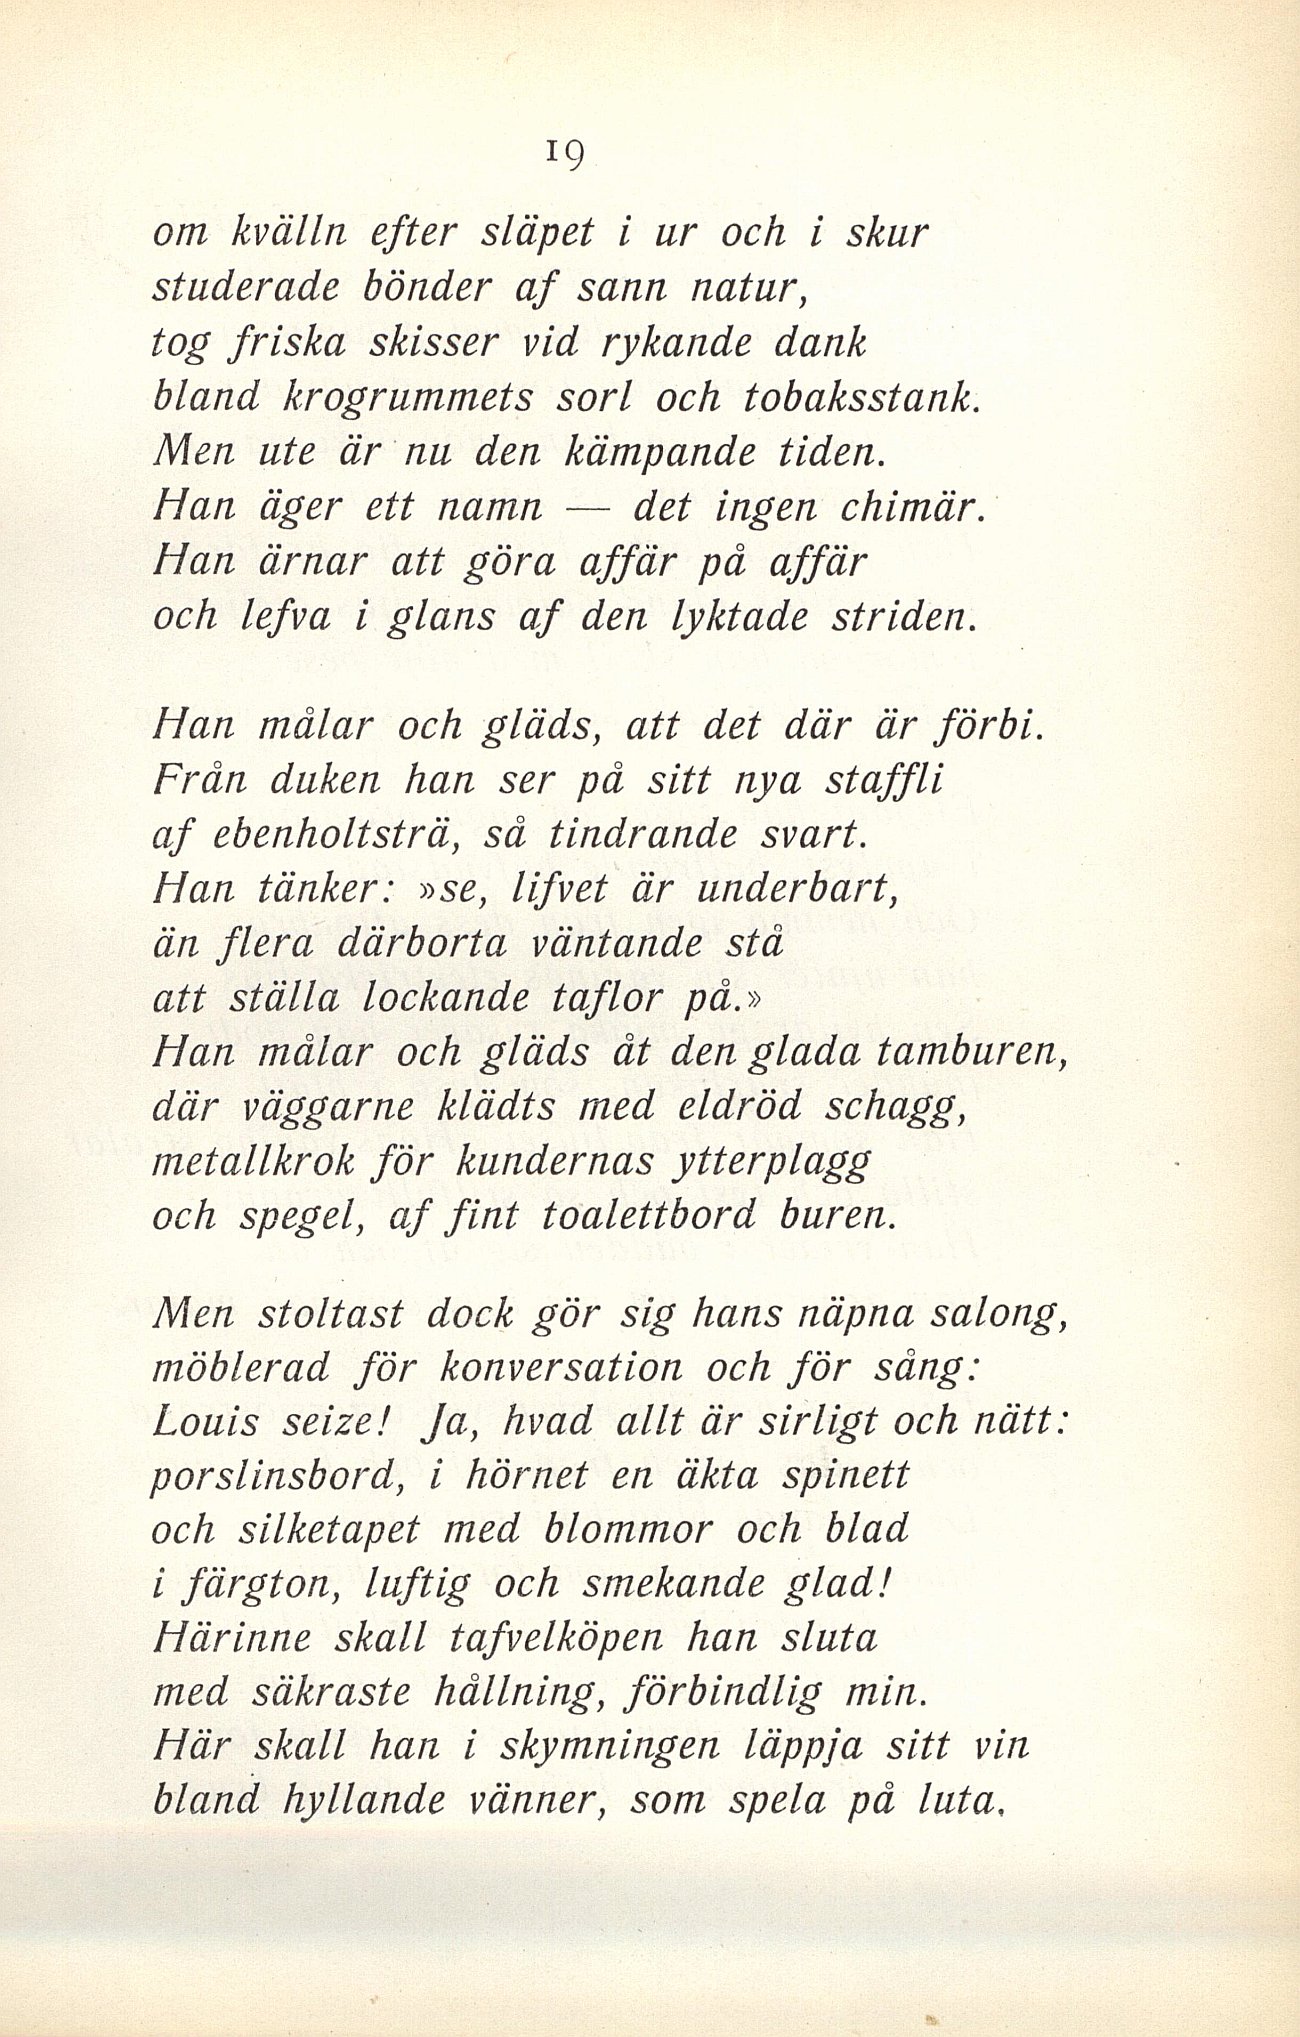 19 (Nornan. Svensk kalender / 1905. Trettioandra årgången)